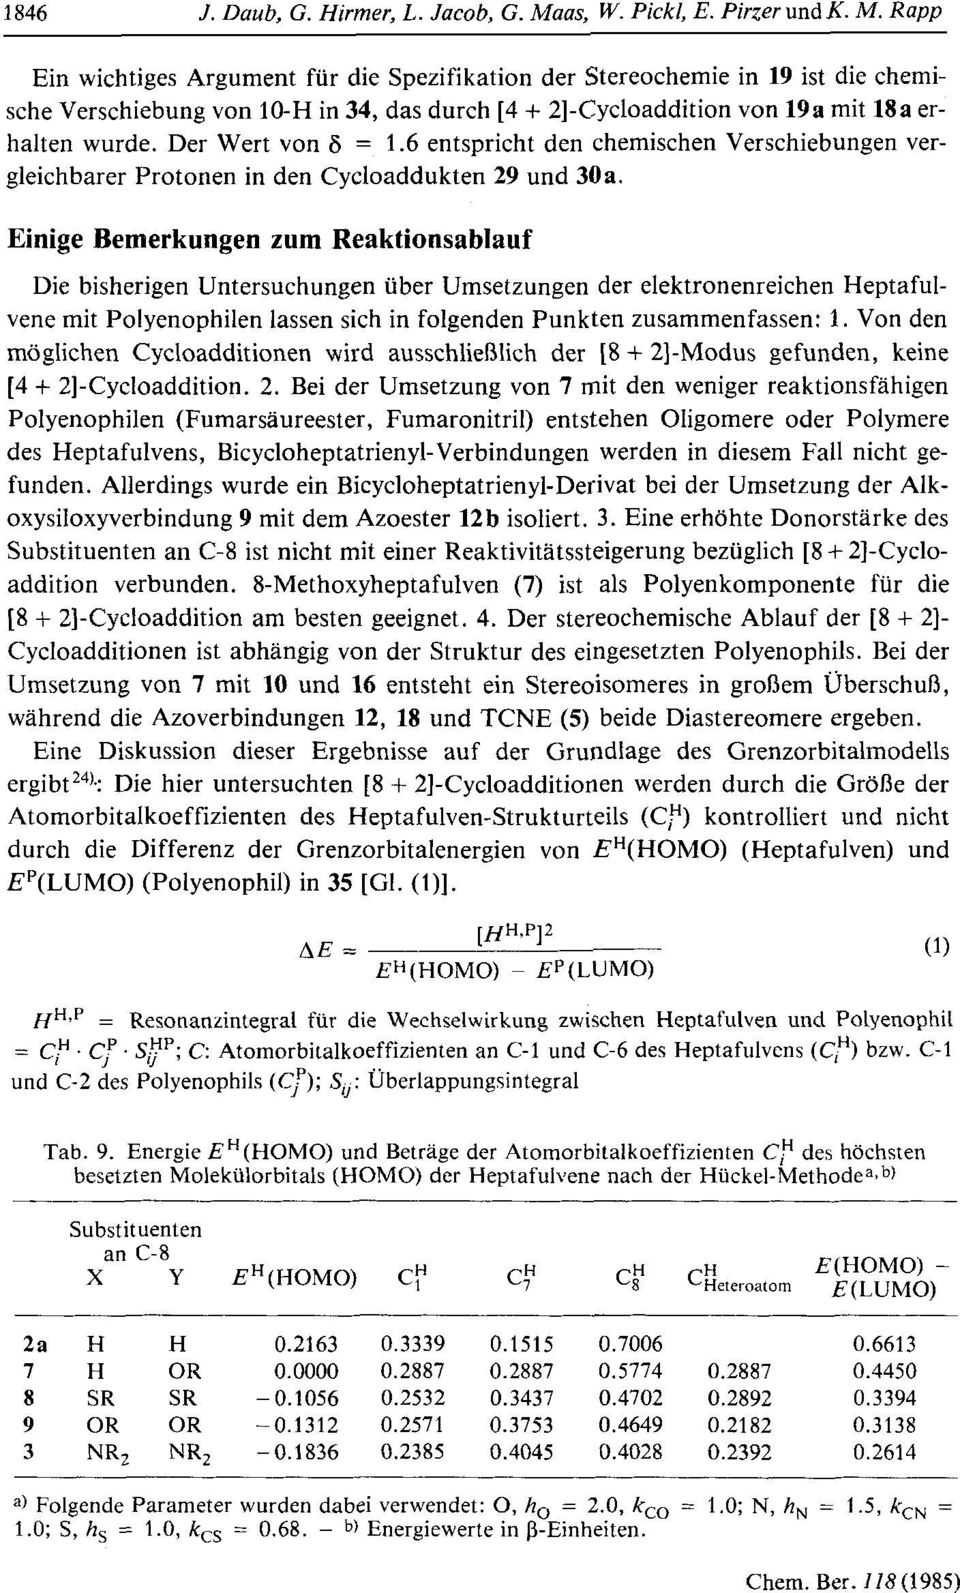 Rapp Ein wichtiges Argument fur die Spezifikation der Stereochemie in 19 ist die chemische Verschiebung von 10-H in 34, das durch [4 + 21-Cycloaddition von 19a rnit 18a erhalten wurde.